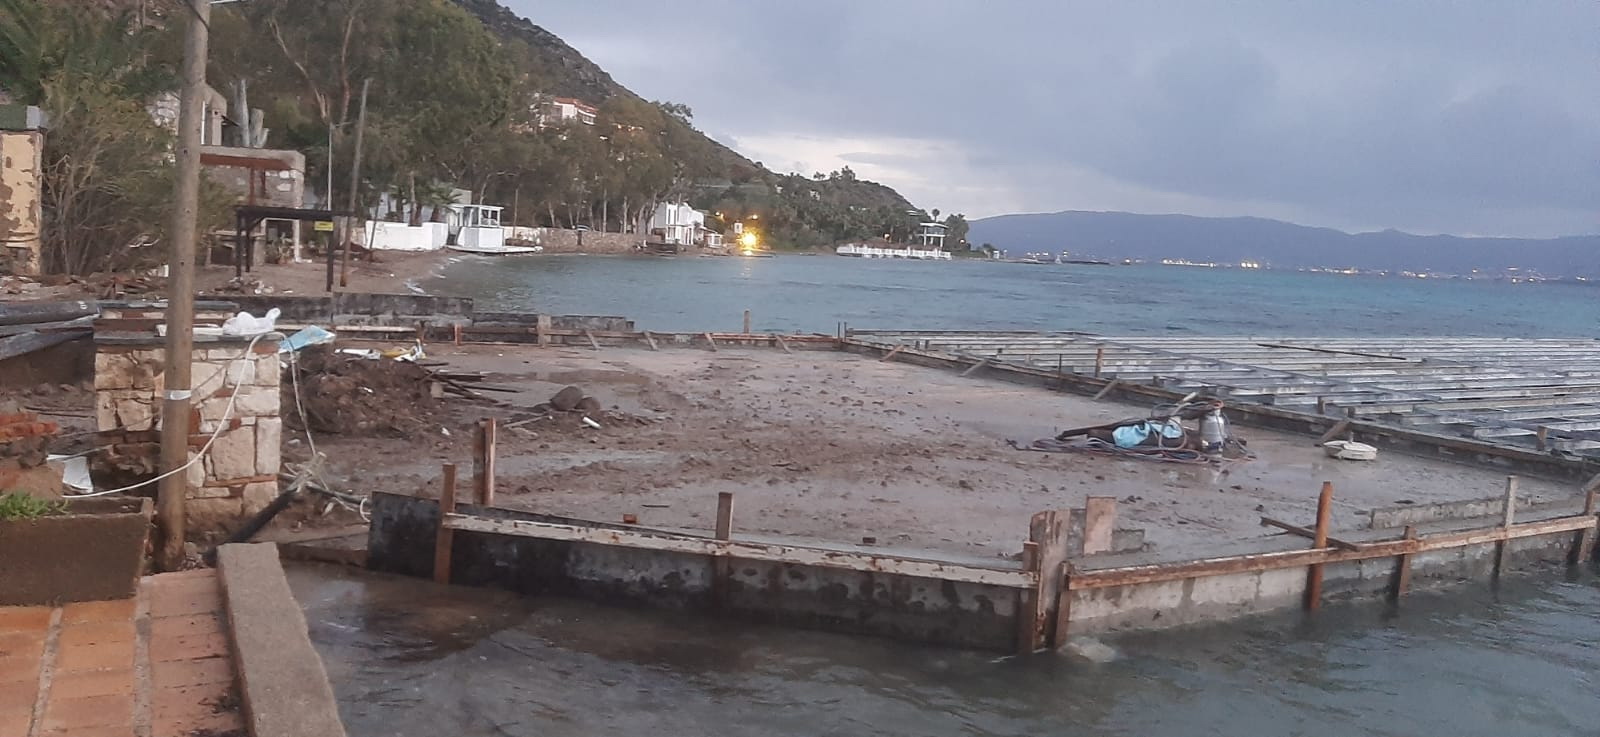 Akyarlar'da halk plajında denizin içerisine beton dökülmesine tepki